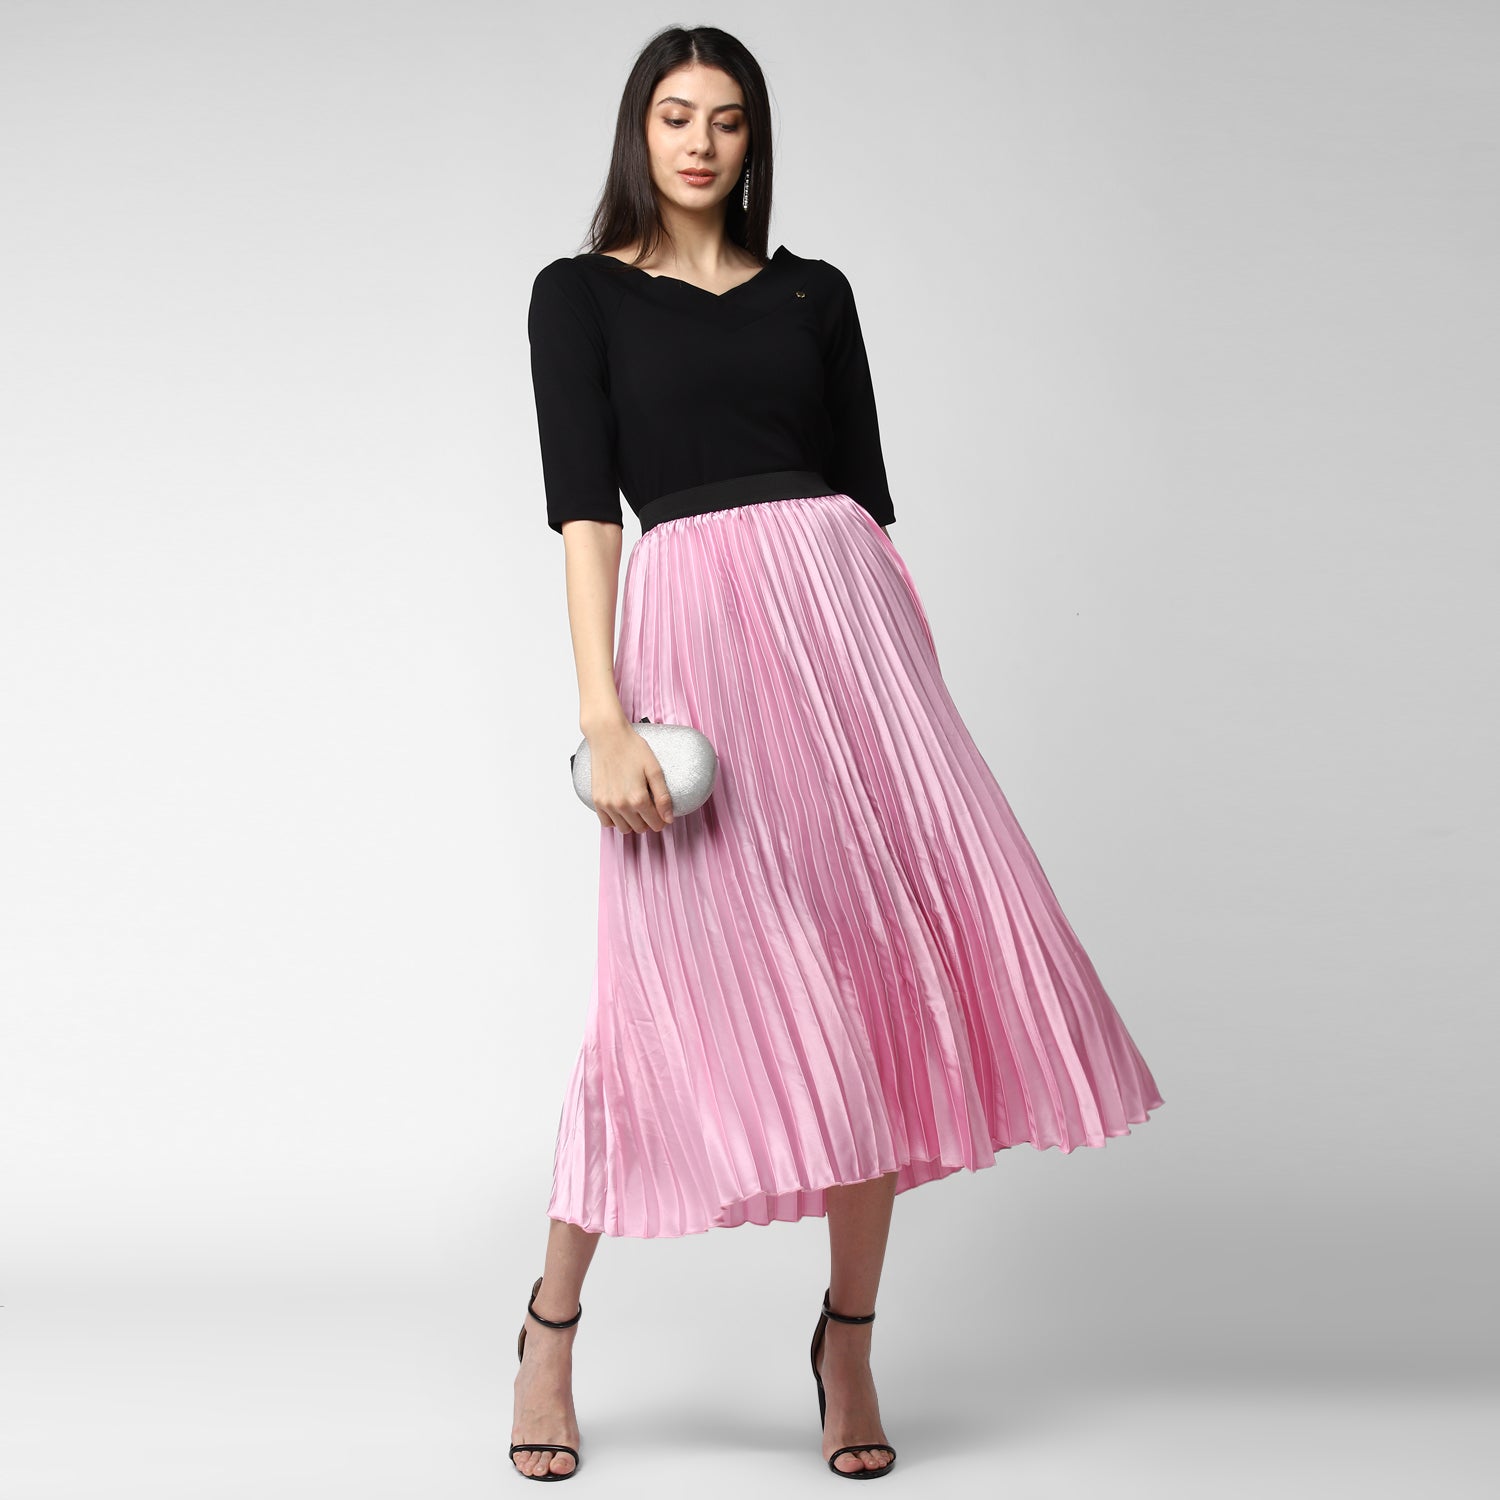 Women's Pink Satin Pleated Skirt - StyleStone